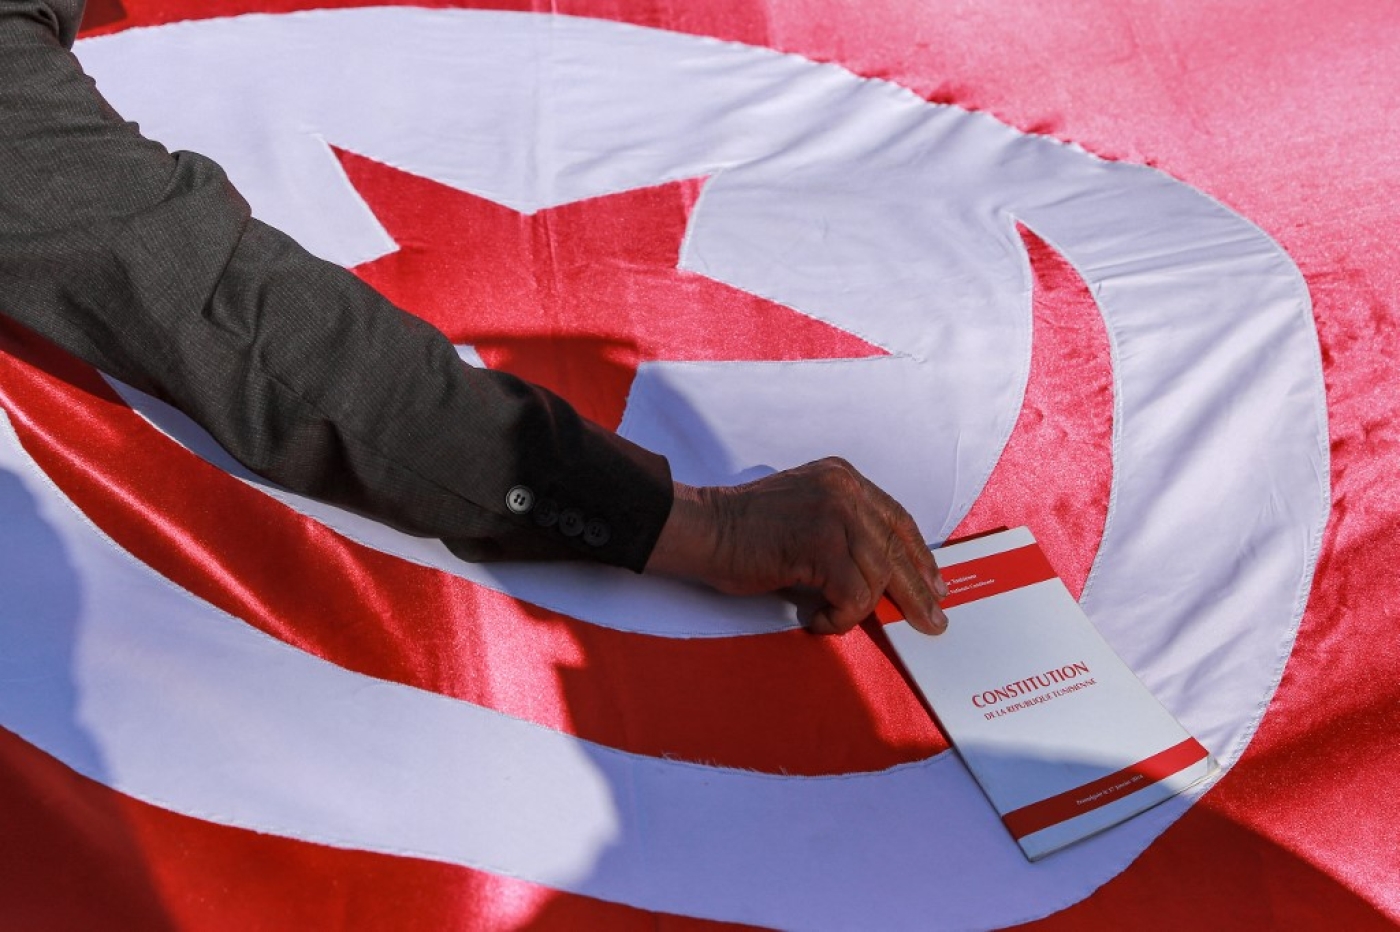 Un manifestant met une copie de la Constitution tunisienne sur un drapeau tunisien lors d’une manifestation à Tunis contre le président Kais Saied, le 23 février 2022 (AFP/Anis Mili)